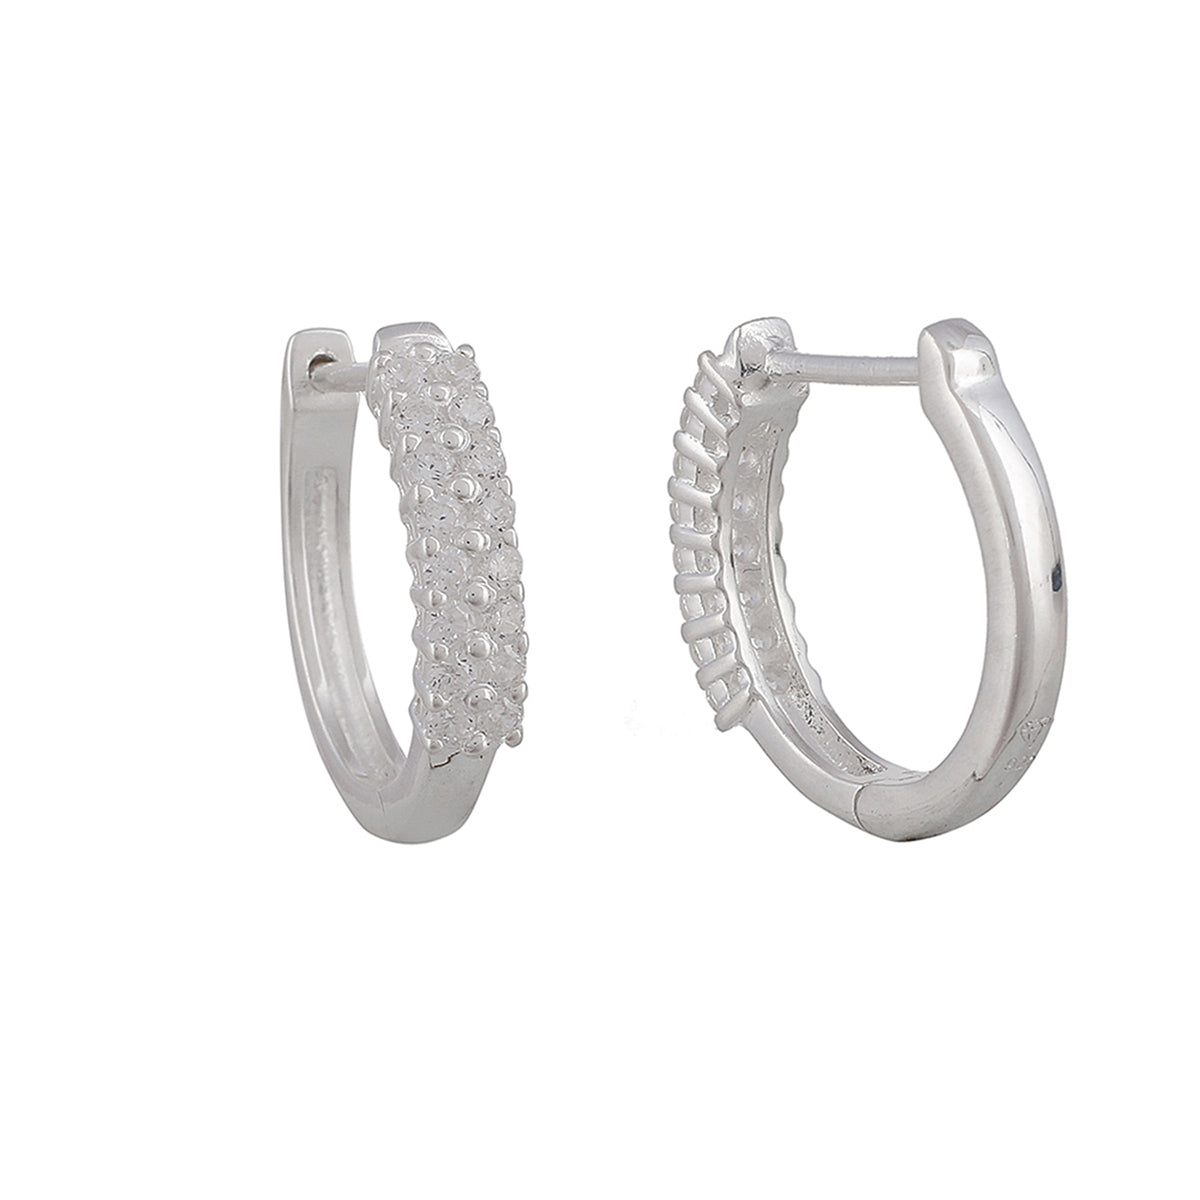 Simple And Beautiful 925 Sterling Silver Hoop Earrings